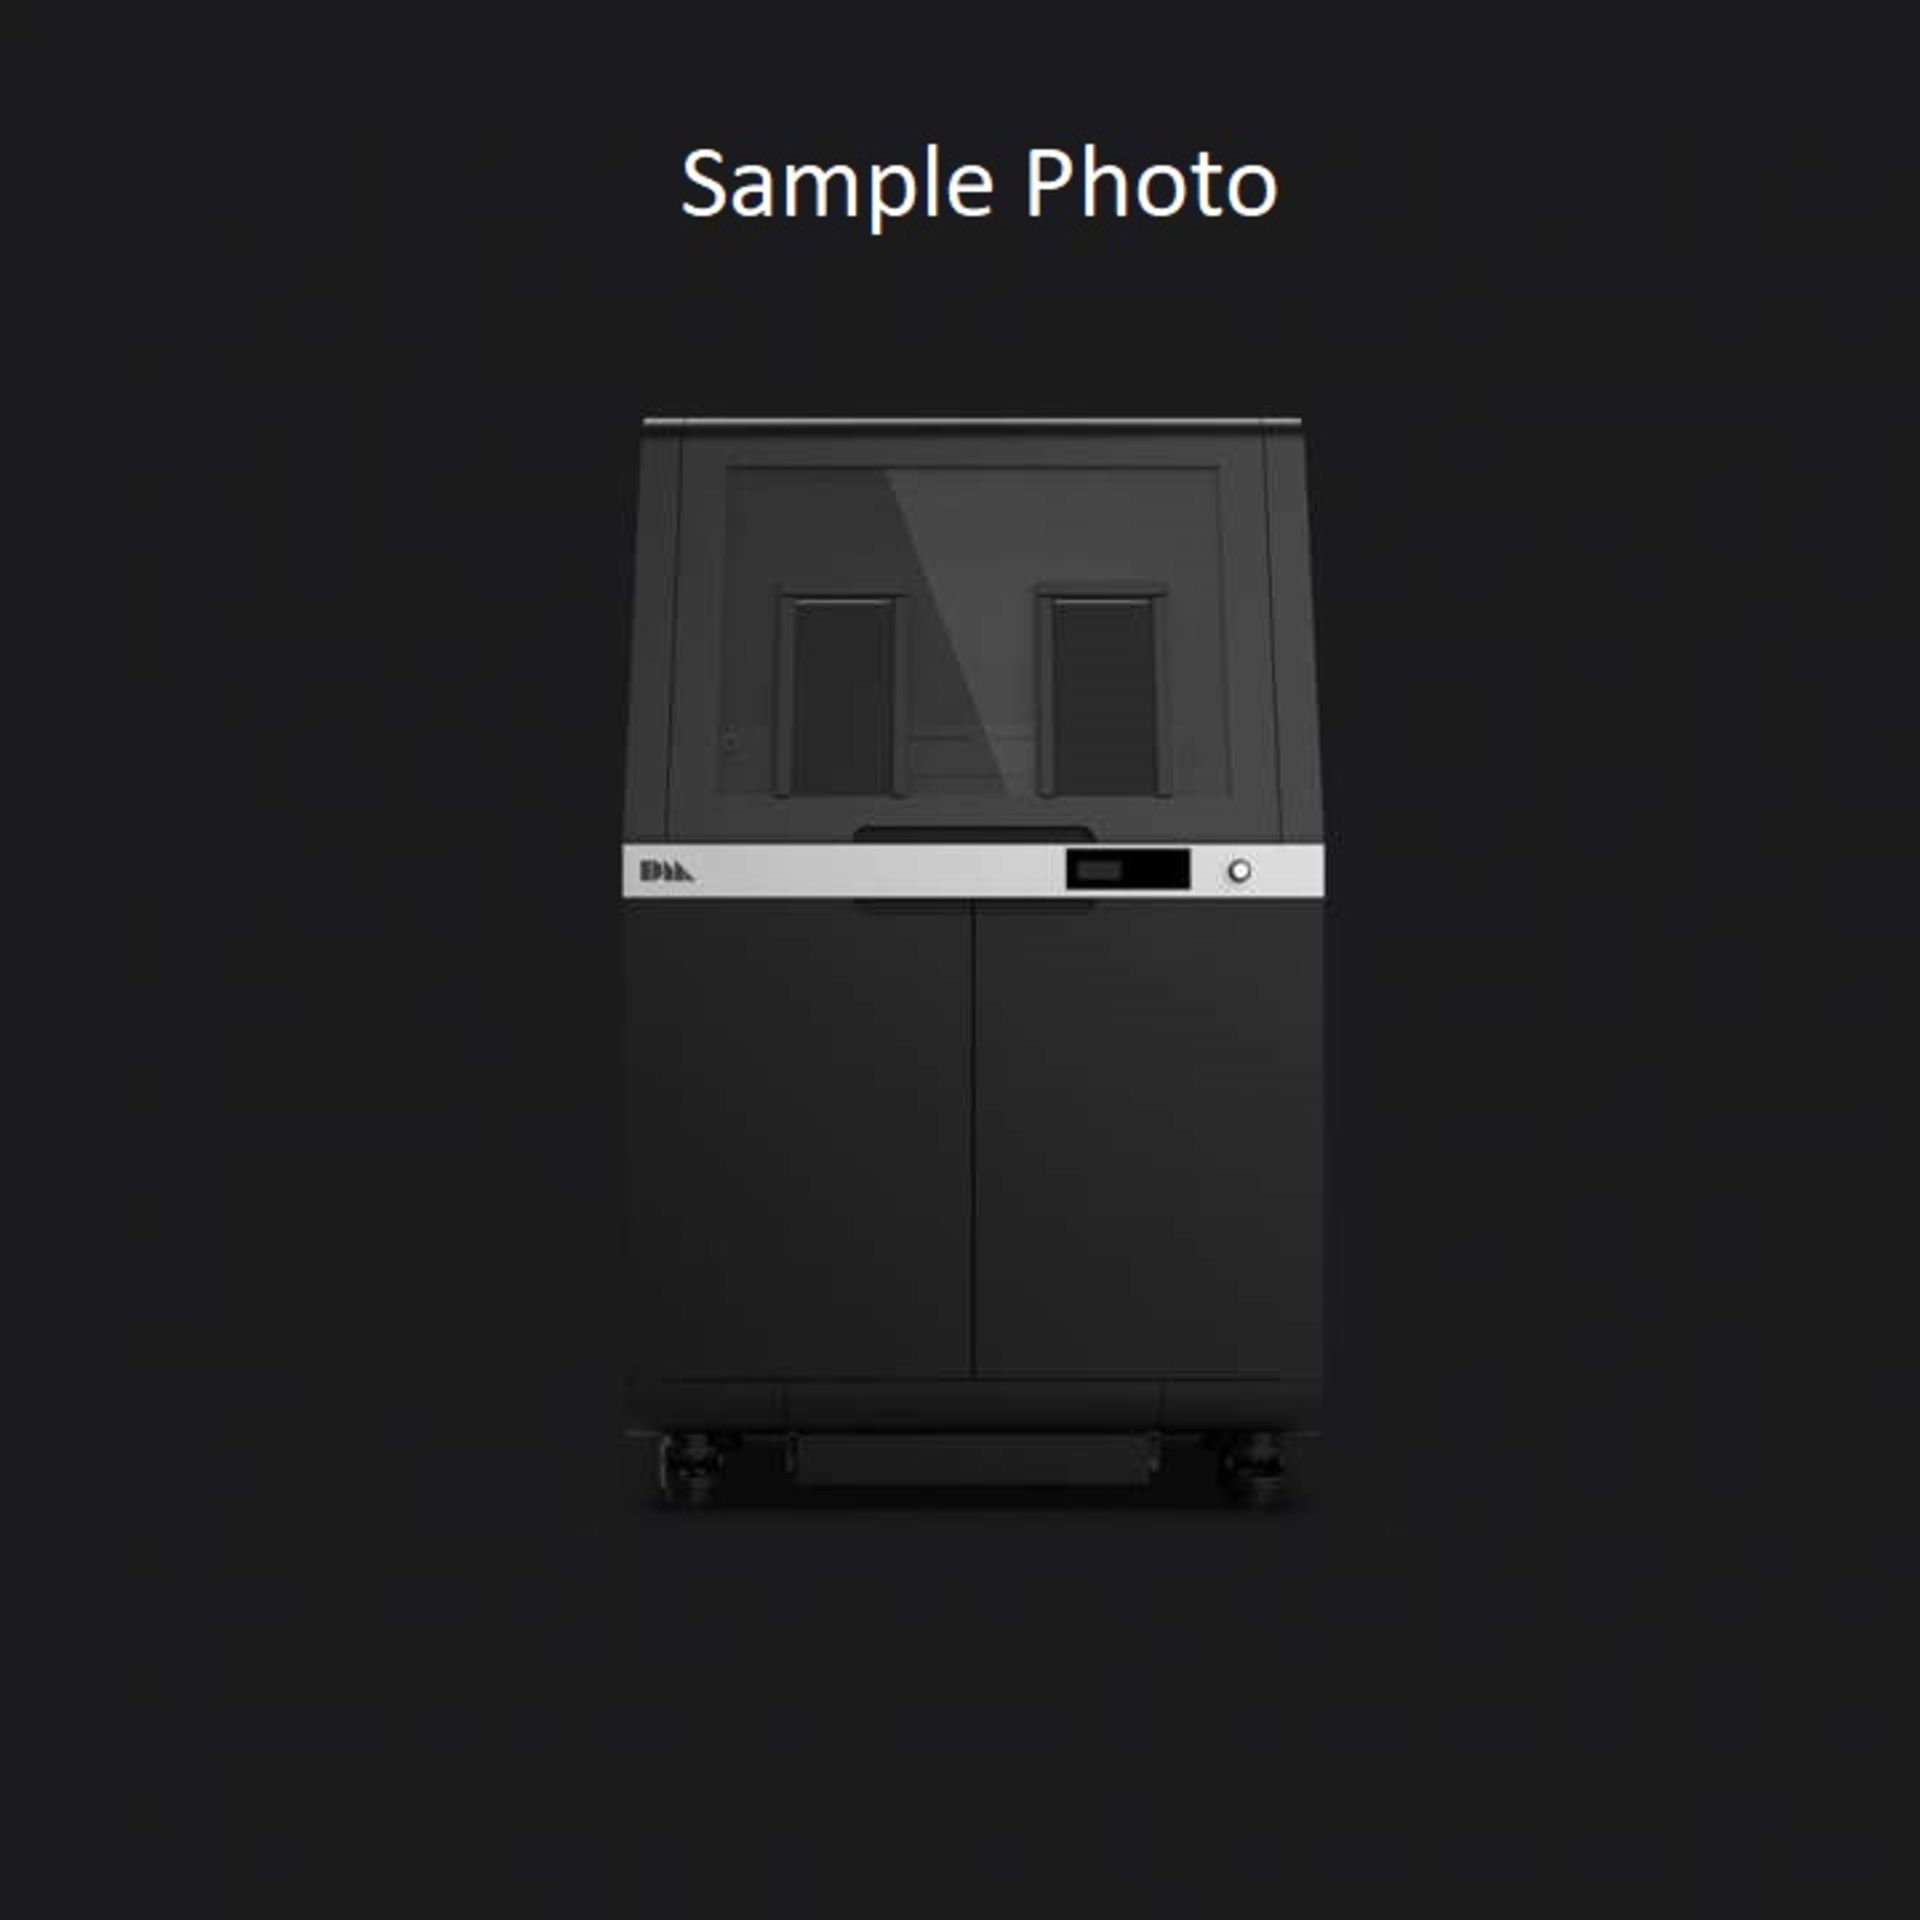 Desktop Metal Shop System Printers, Powder Station & Oven (New) - Image 3 of 20